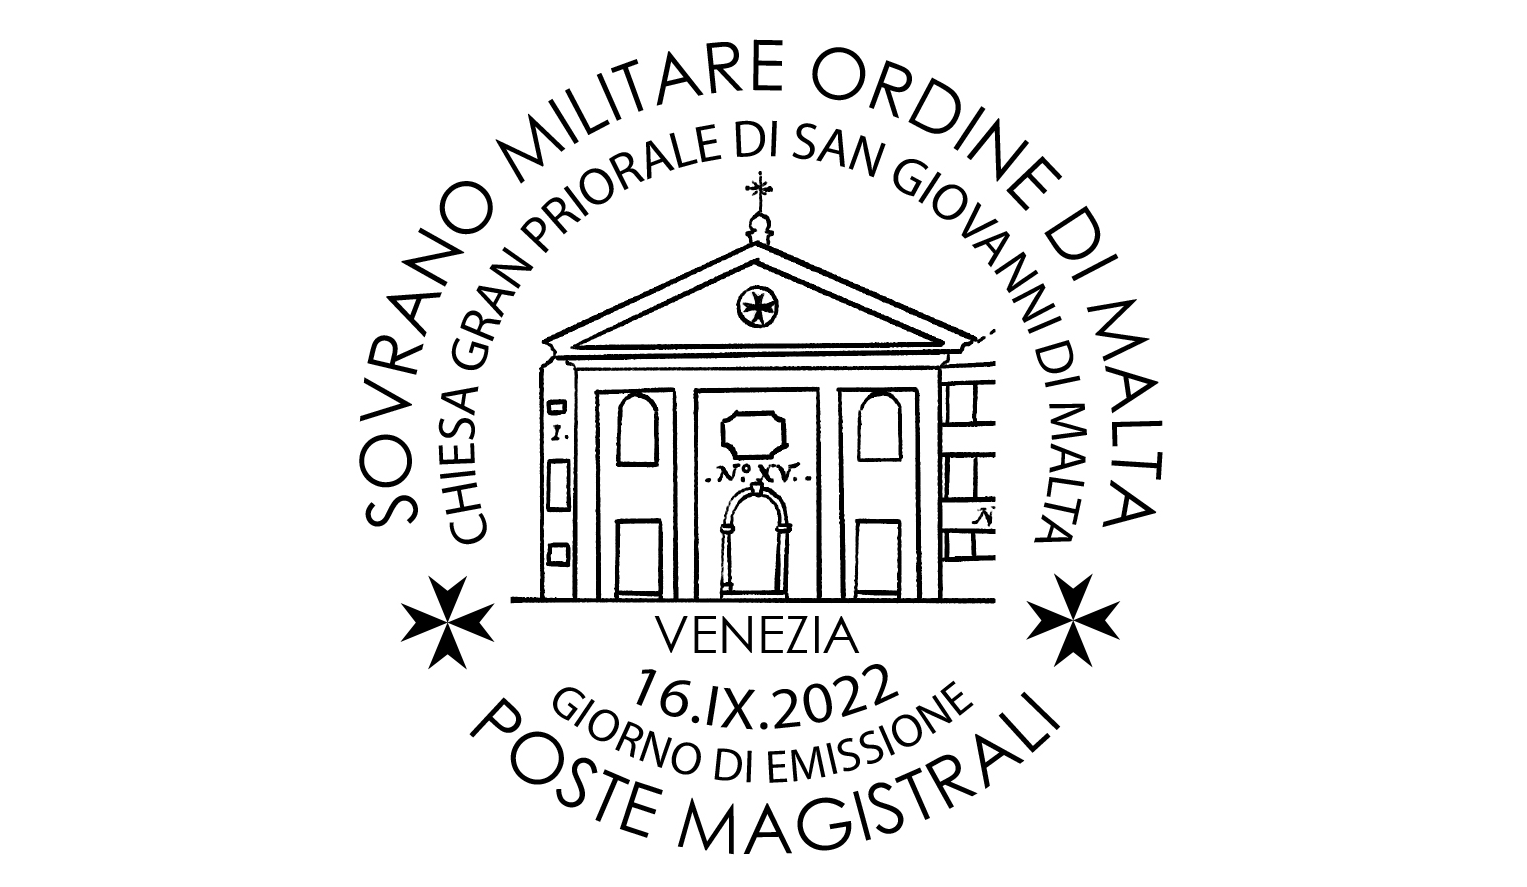 Annullo Giorno di Emissione – Chiese e commende dell’Ordine. Chiesa di San Giovanni di Malta in Venezia